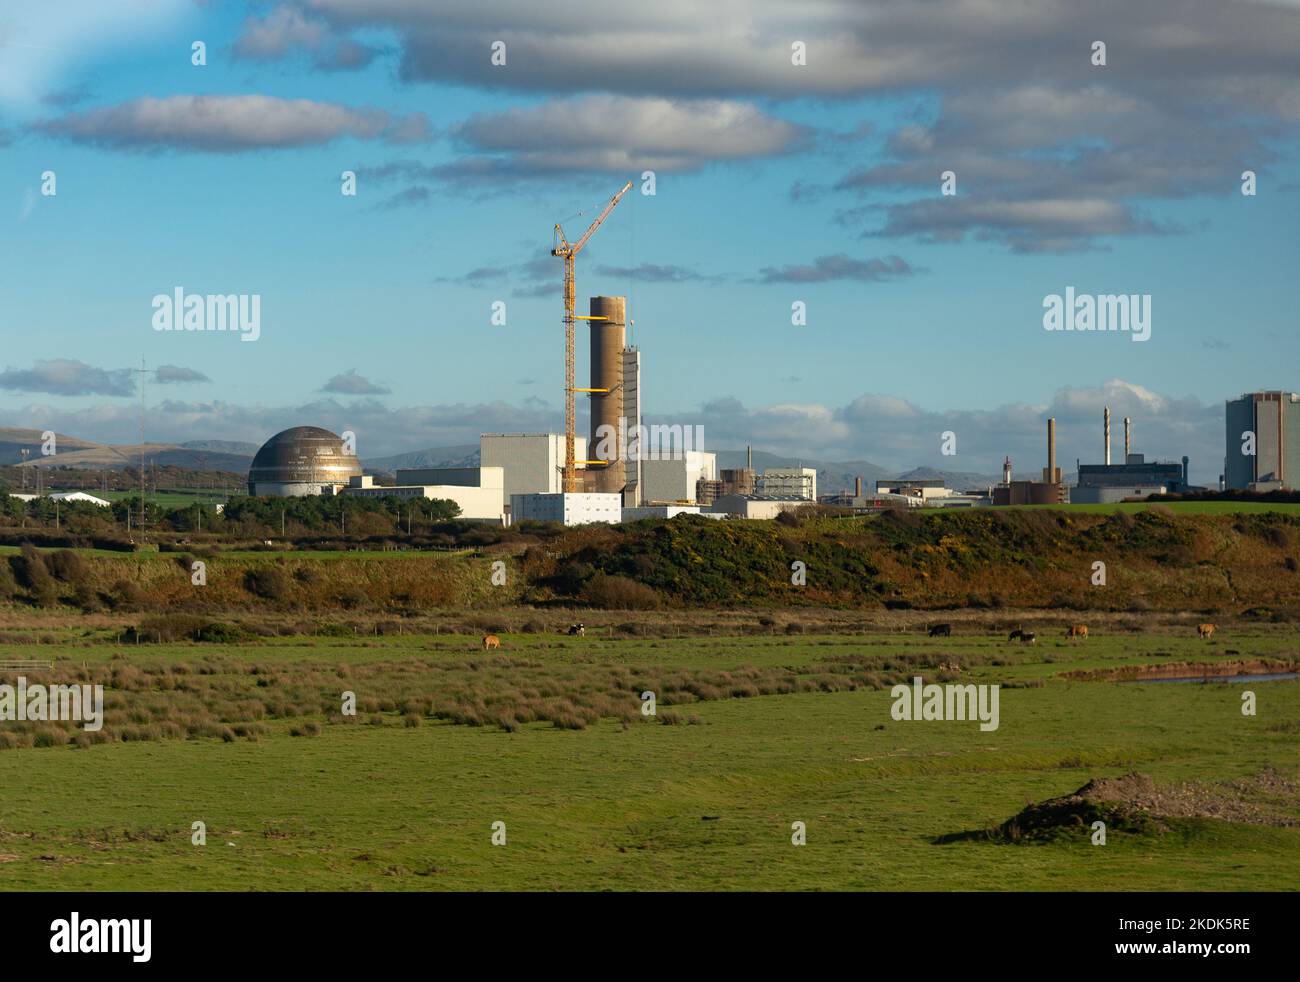 El centro de reprocesamiento de combustible nuclear y desmantelamiento nuclear de Sellafield, cerca de la aldea de Seascale, en la costa del mar de Irlanda, en Cumbria, Reino Unido Foto de stock